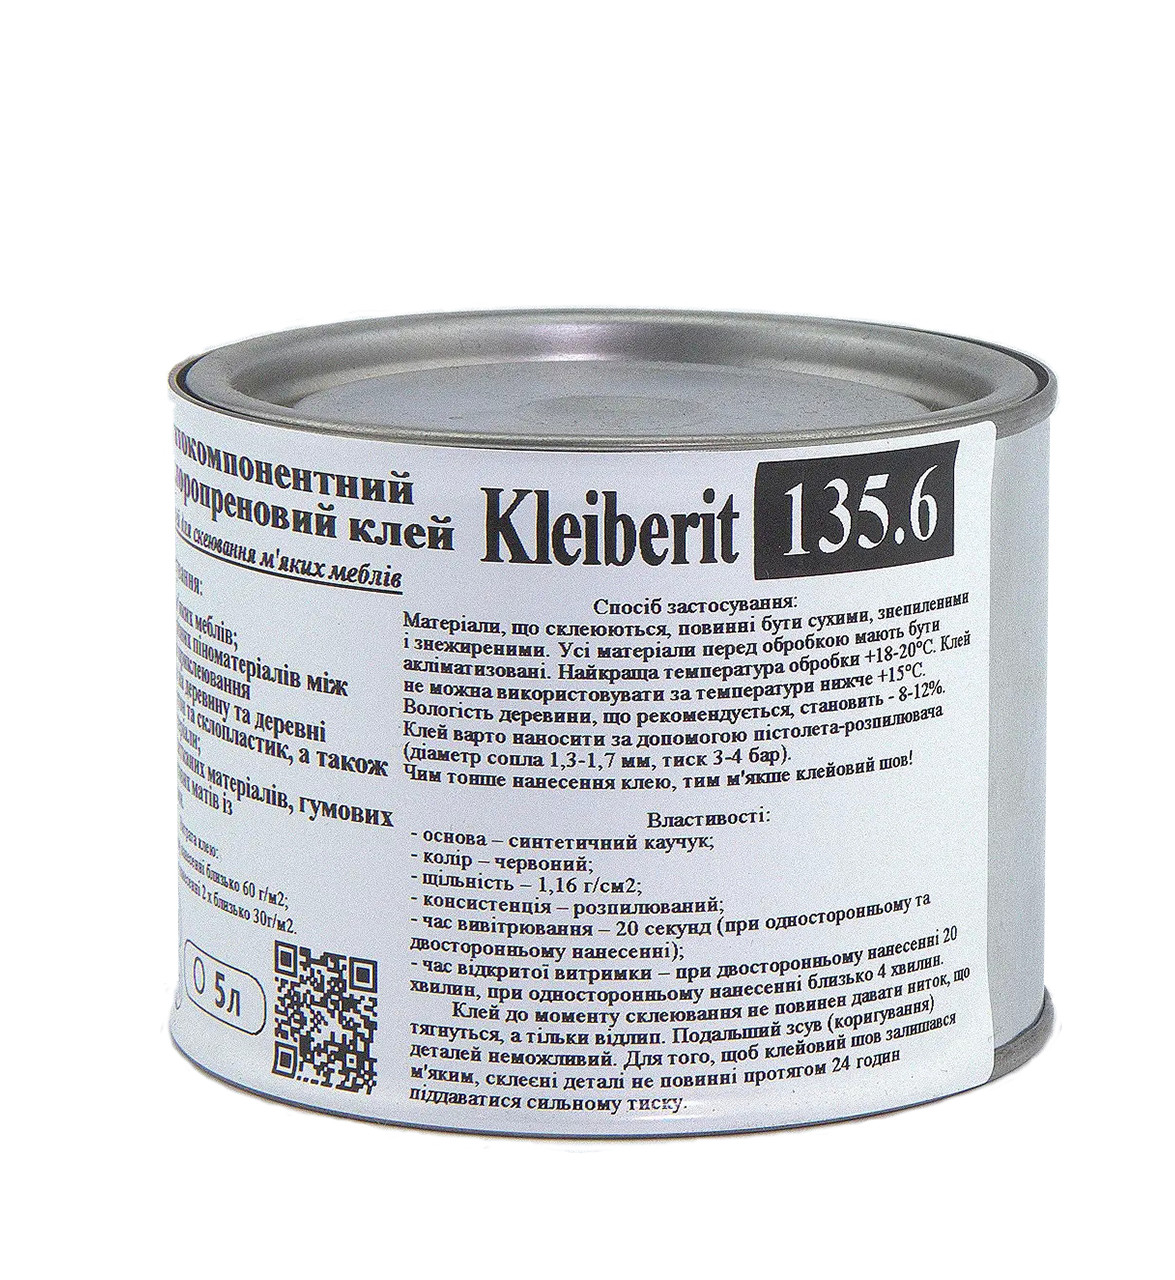 Клей для тканини, карпету Kleiberit 135.6, на каучуковій основі, під пульвер, меблевий (Німеччина) анонс фото